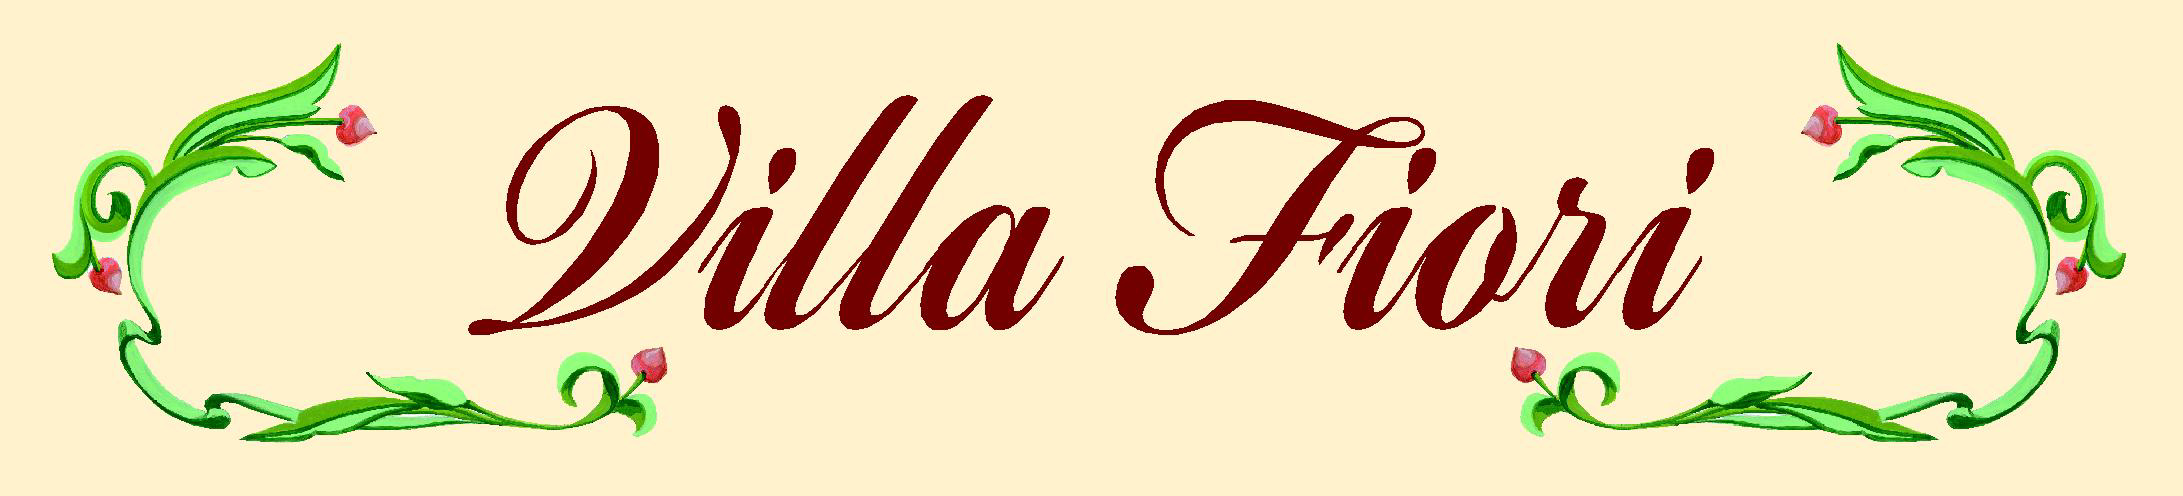 Fondazione Villa Fiori Residenza Sanitaria Assistenziale Onlus ISTITUZIONE DI ASSISTENZA DAL 1888 Via Belcolle, 17 25075 NAVE (Brescia).030 2530393-4 030 2538586 E-Mail: segreteria1@villafiori.it www.